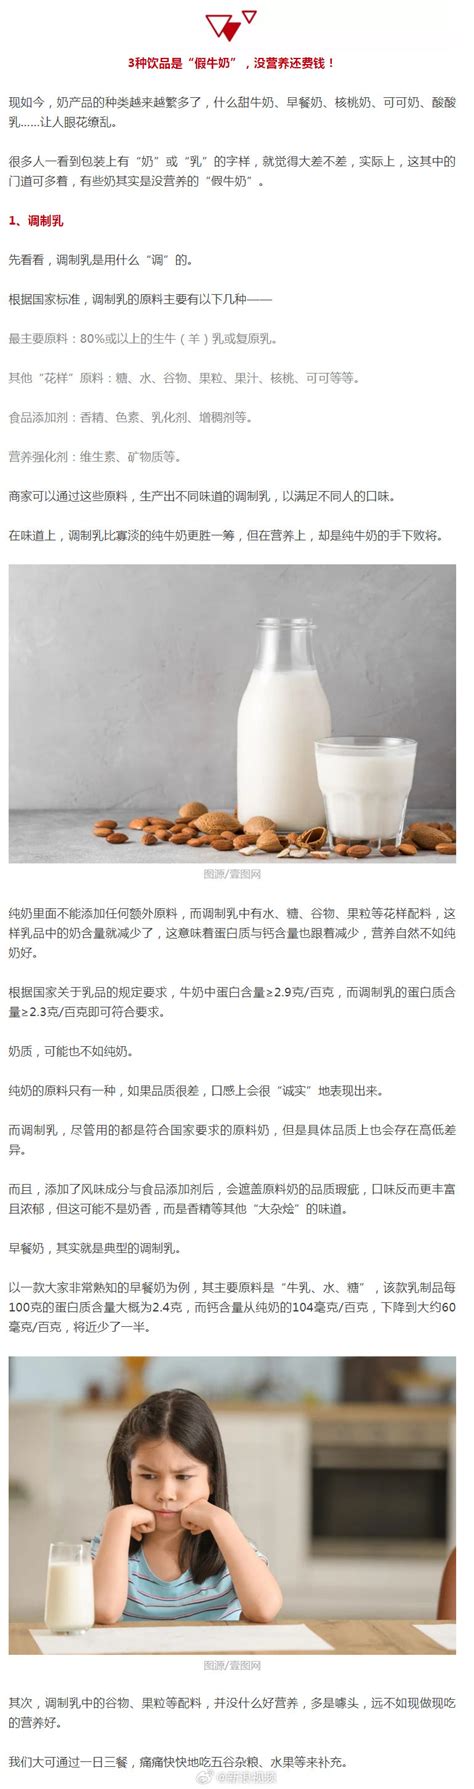 你知道吗？喝牛奶时千万别吃它，可能对身体有大危害 - 微文周刊